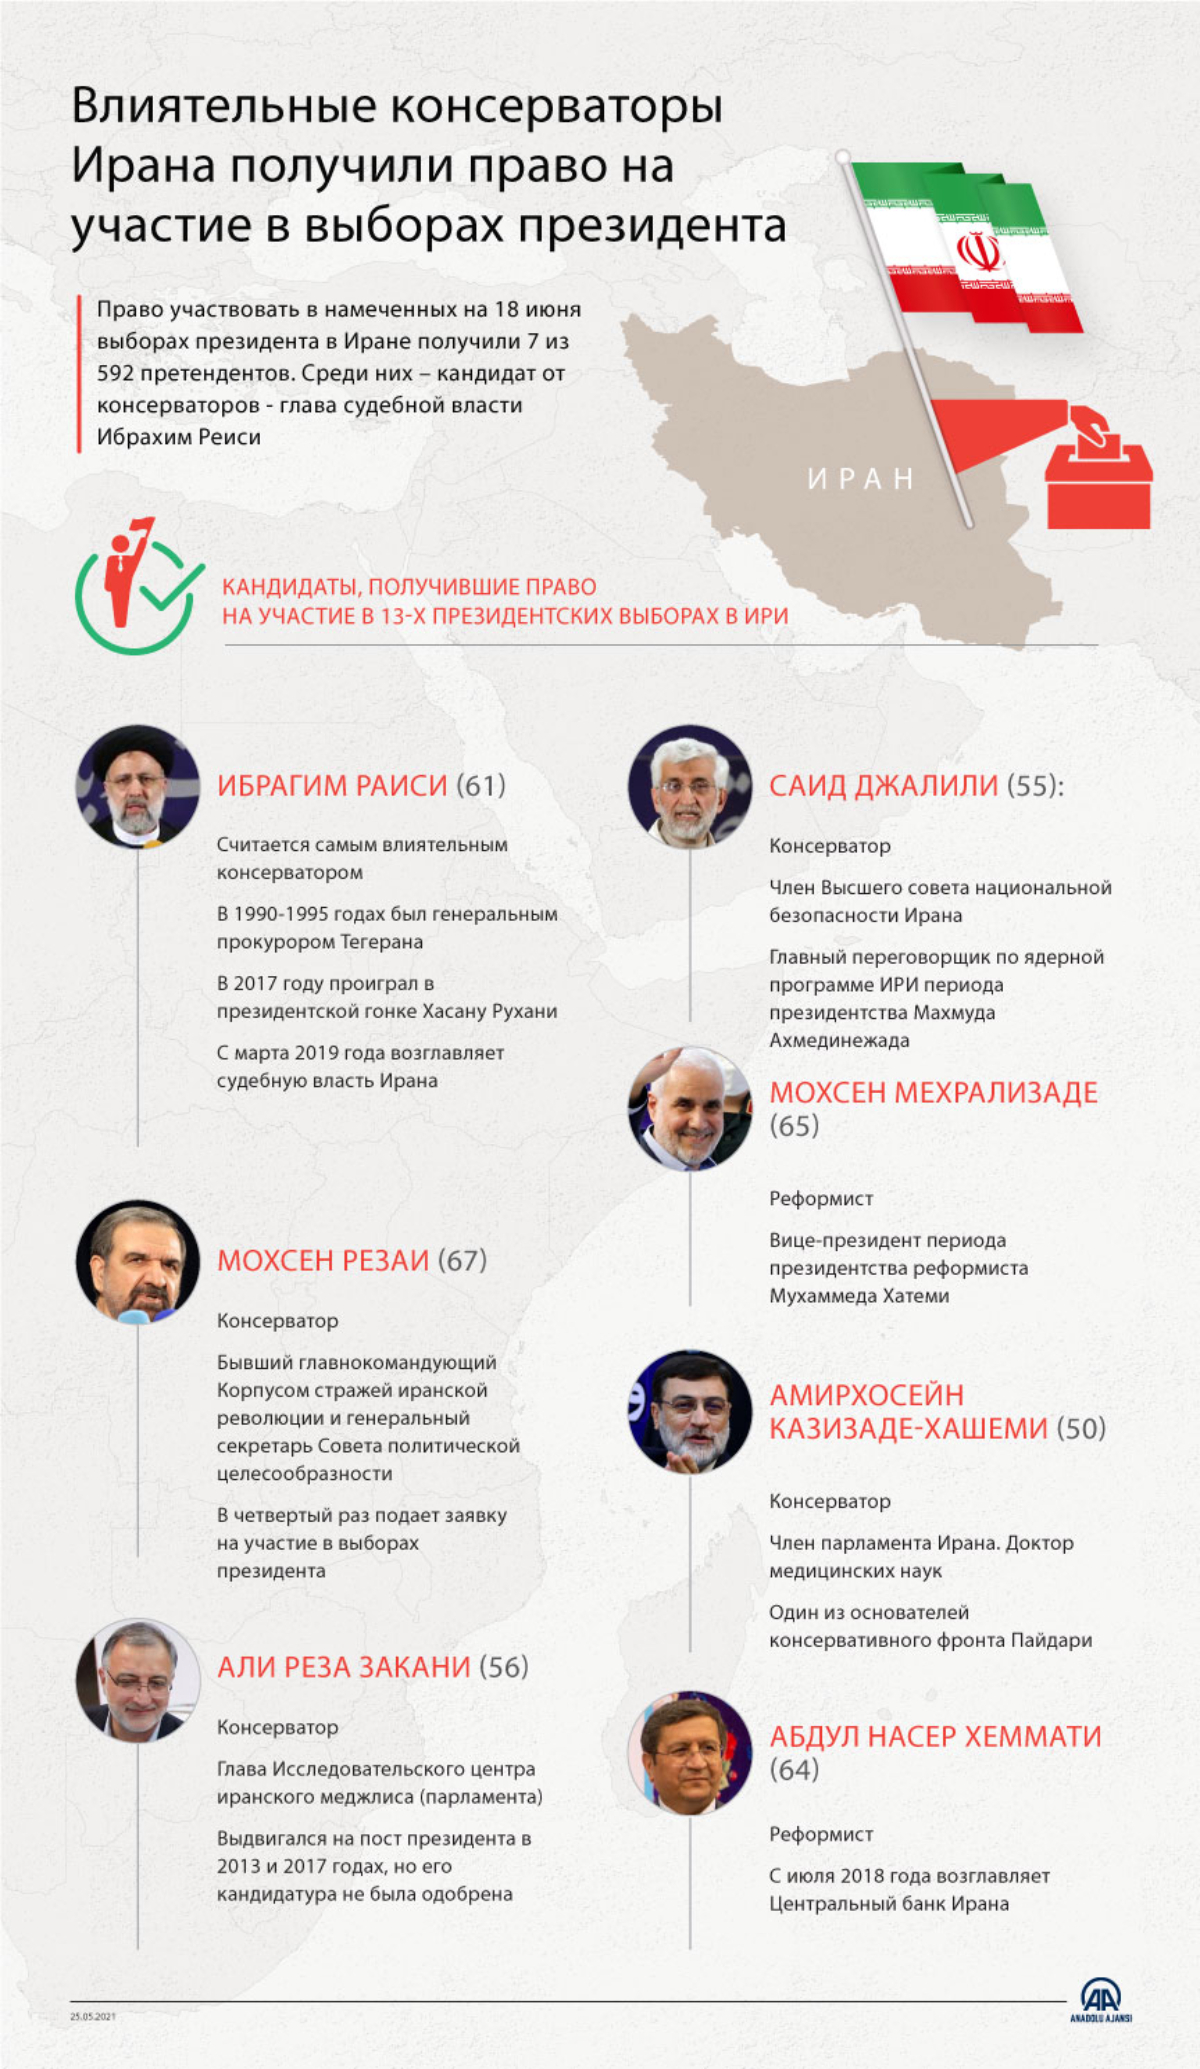 Право участвовать в выборах президента в Иране получили только 7 претендентов